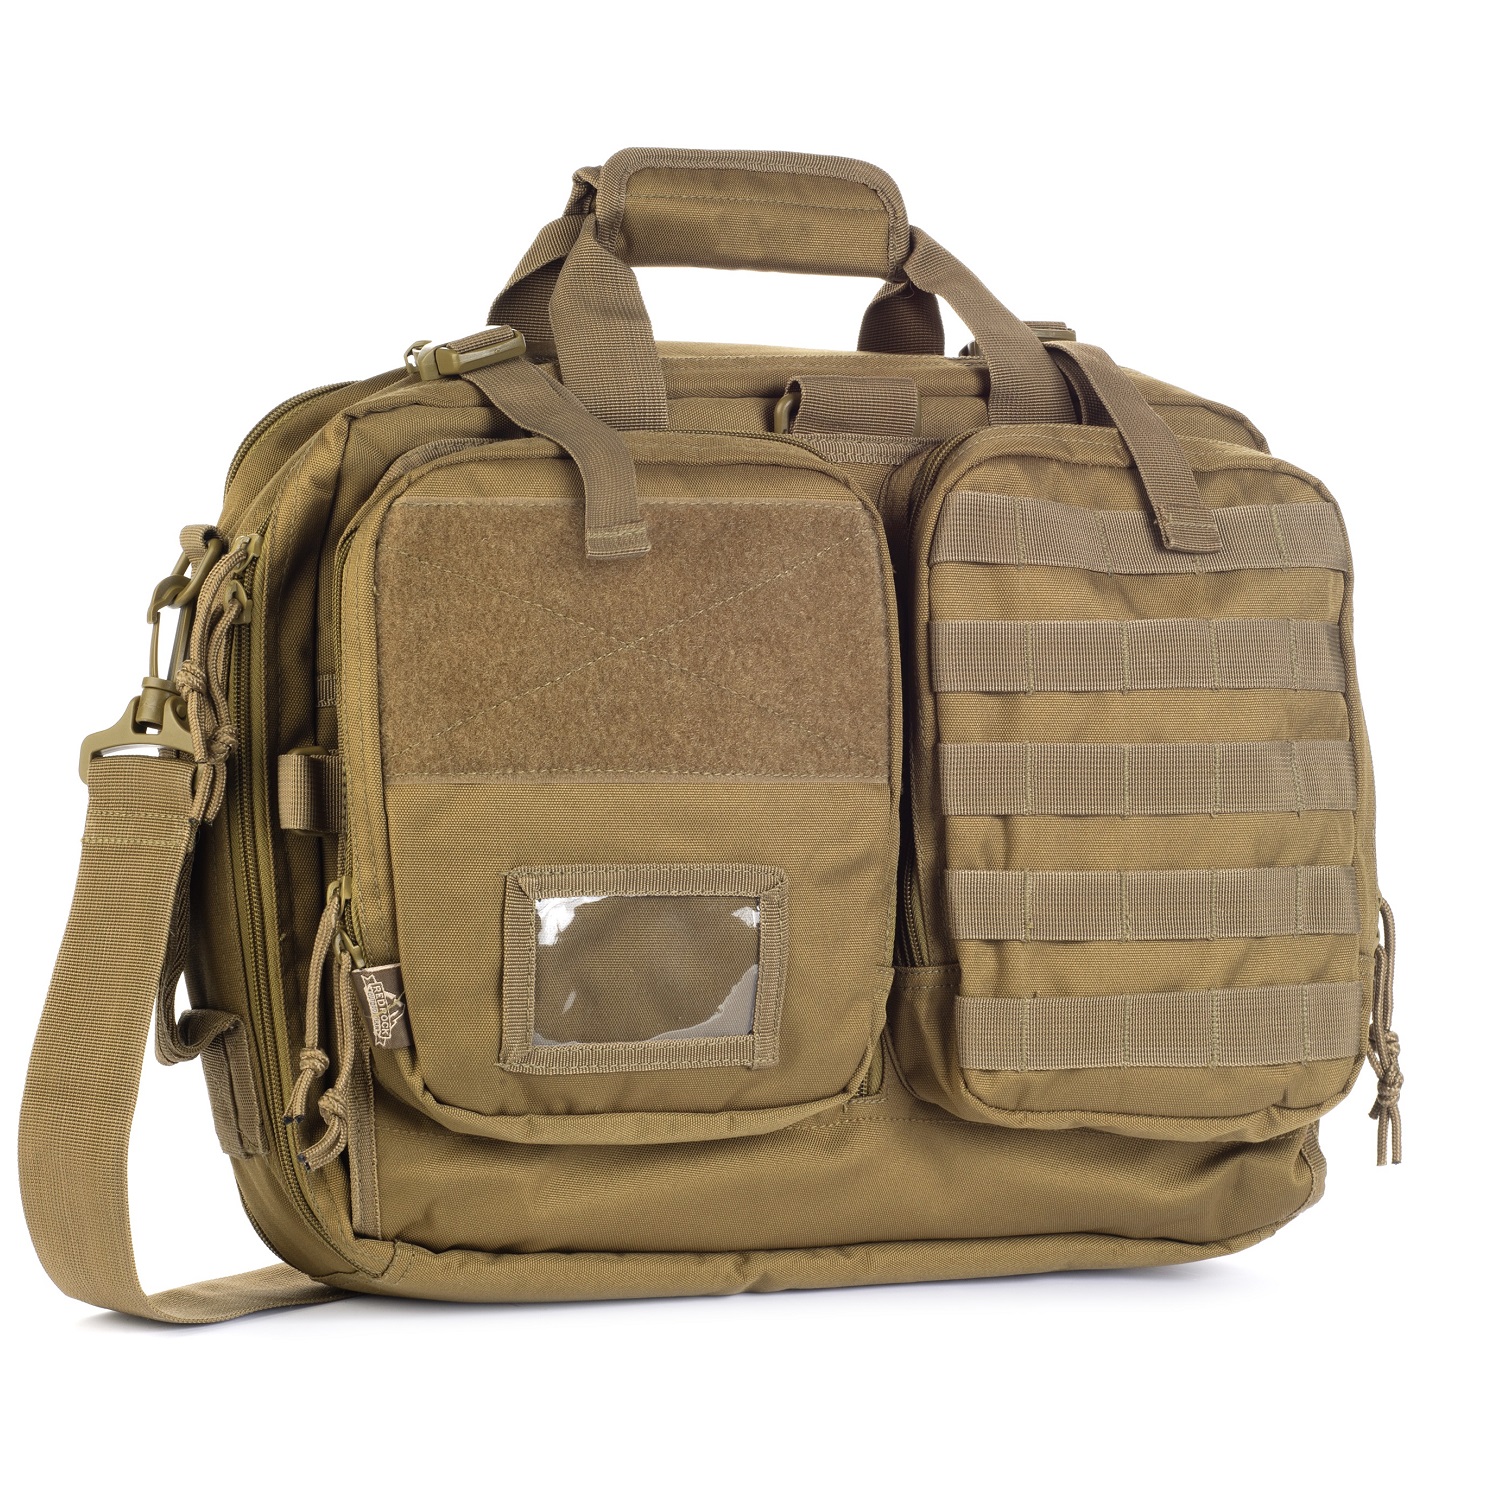 Red Rock Gear NAV Bag Convertible Carry Bag - Get The Best Gear - Shop ...